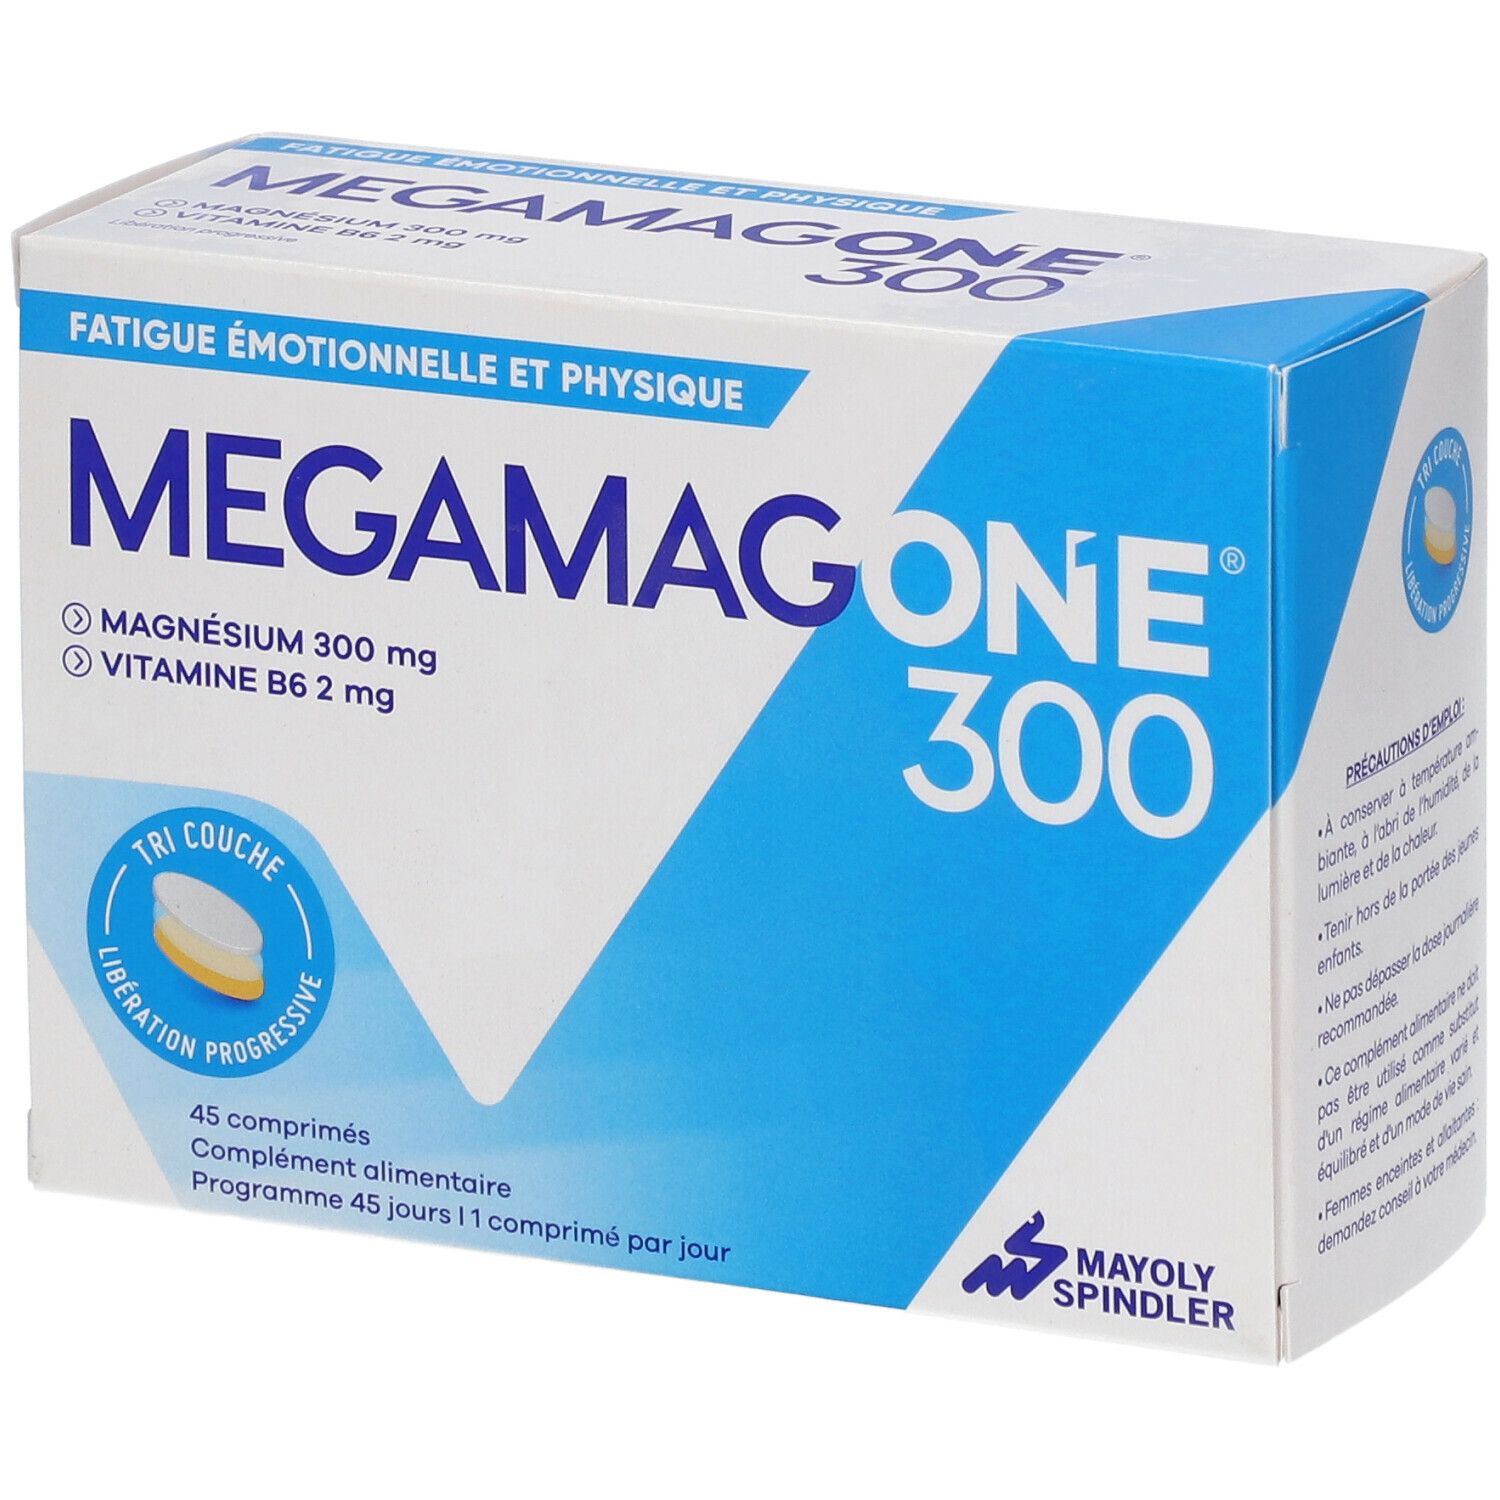 Image of MegamagONE®